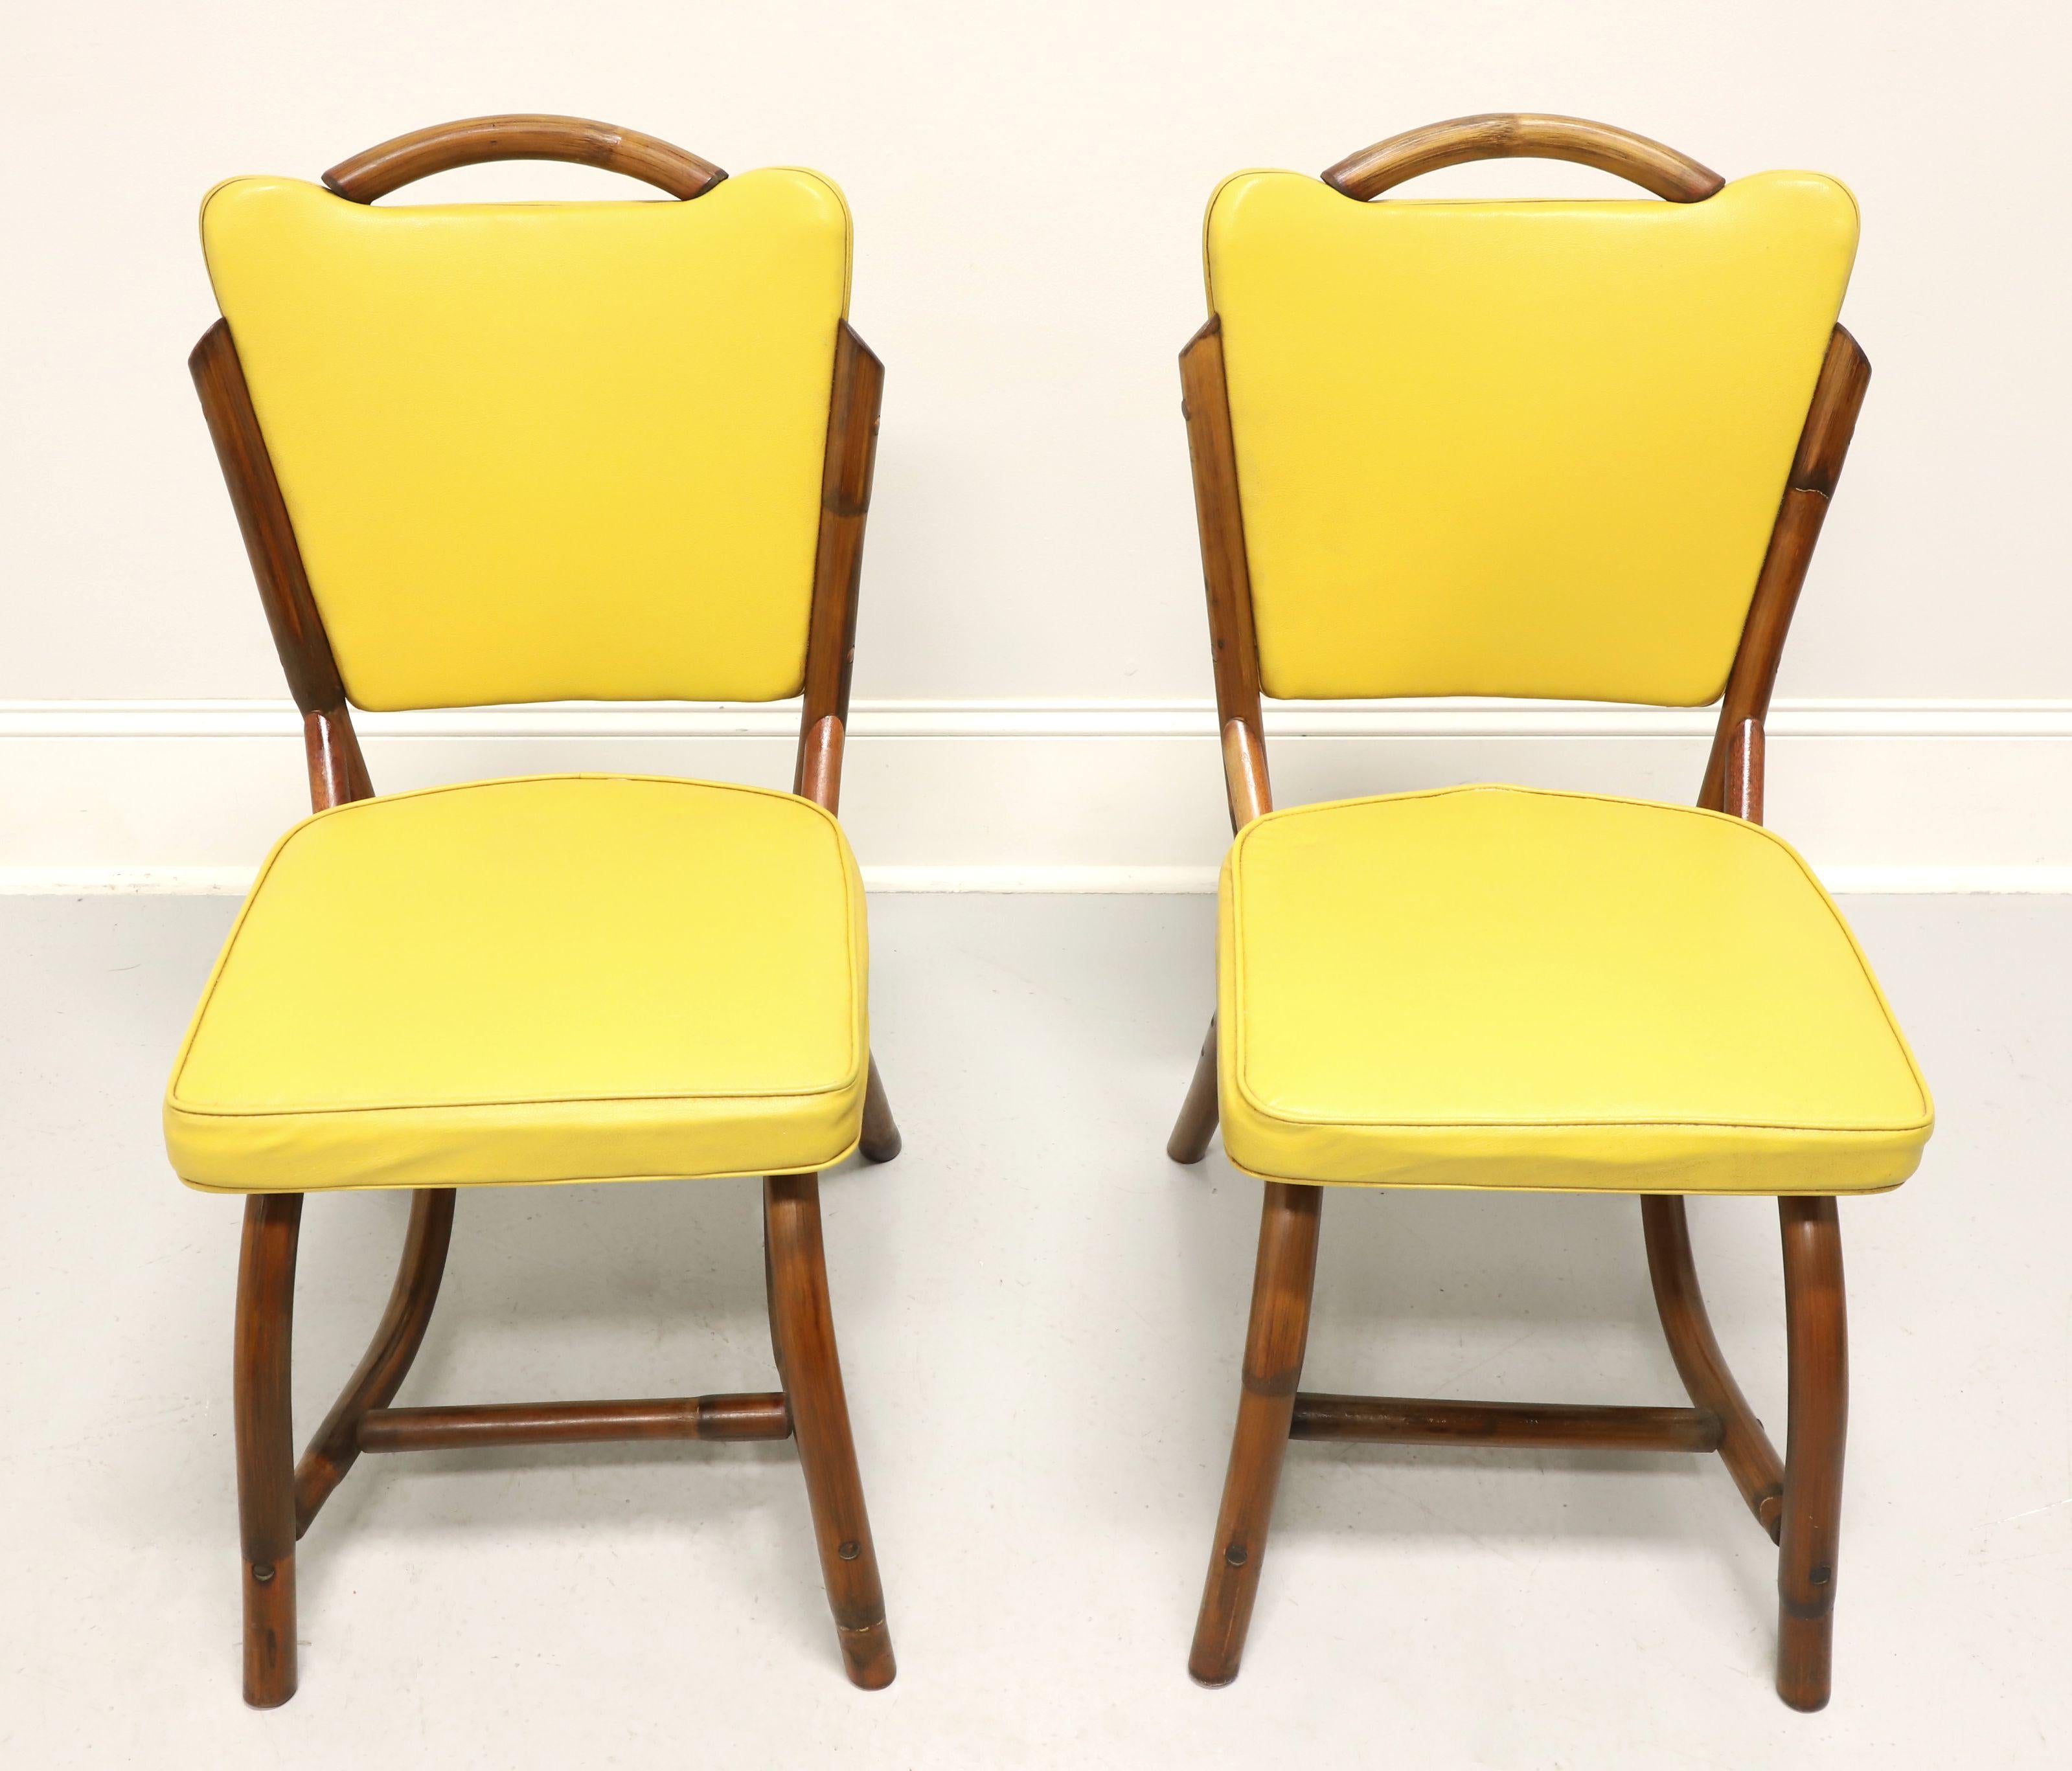 Une paire de chaises latérales de style côtier du milieu du 20e siècle par Bam-Tan Products. Rotin au style caractéristique de la modernité du milieu du siècle, dossier arrondi avec coins évasés rembourrés en vinyle de couleur jaune, pieds arqués et